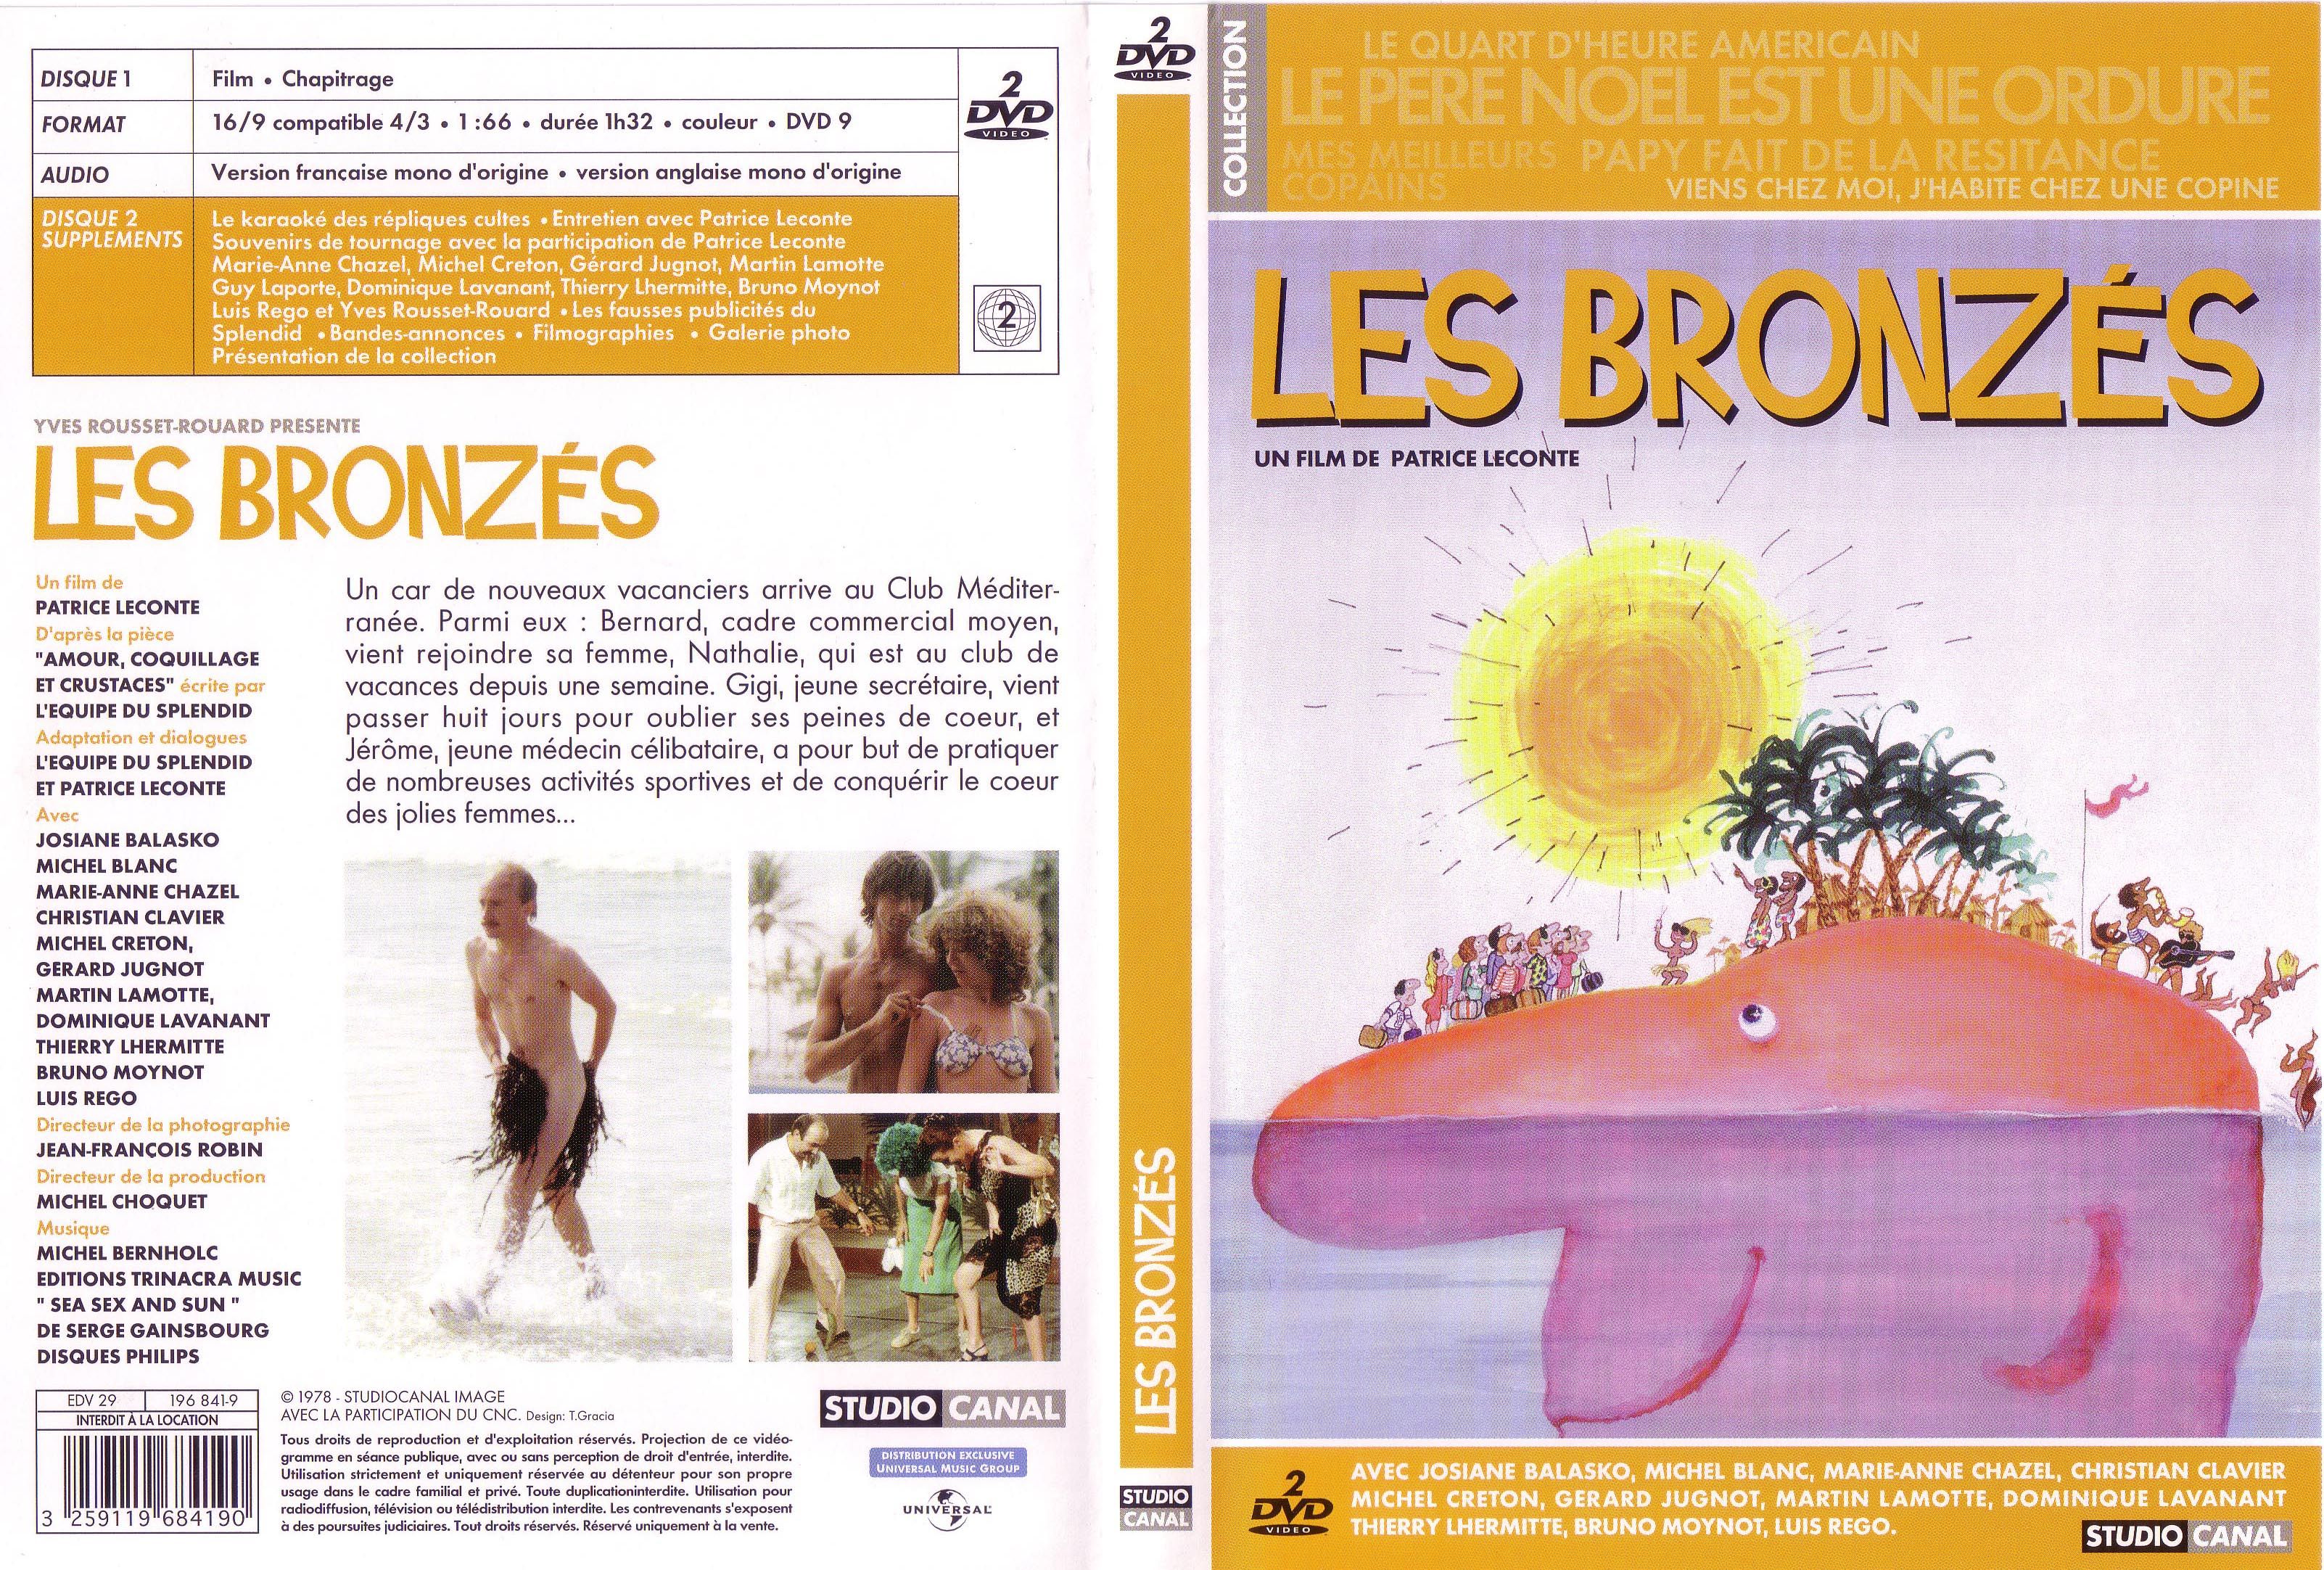 Jaquette DVD Les bronzs